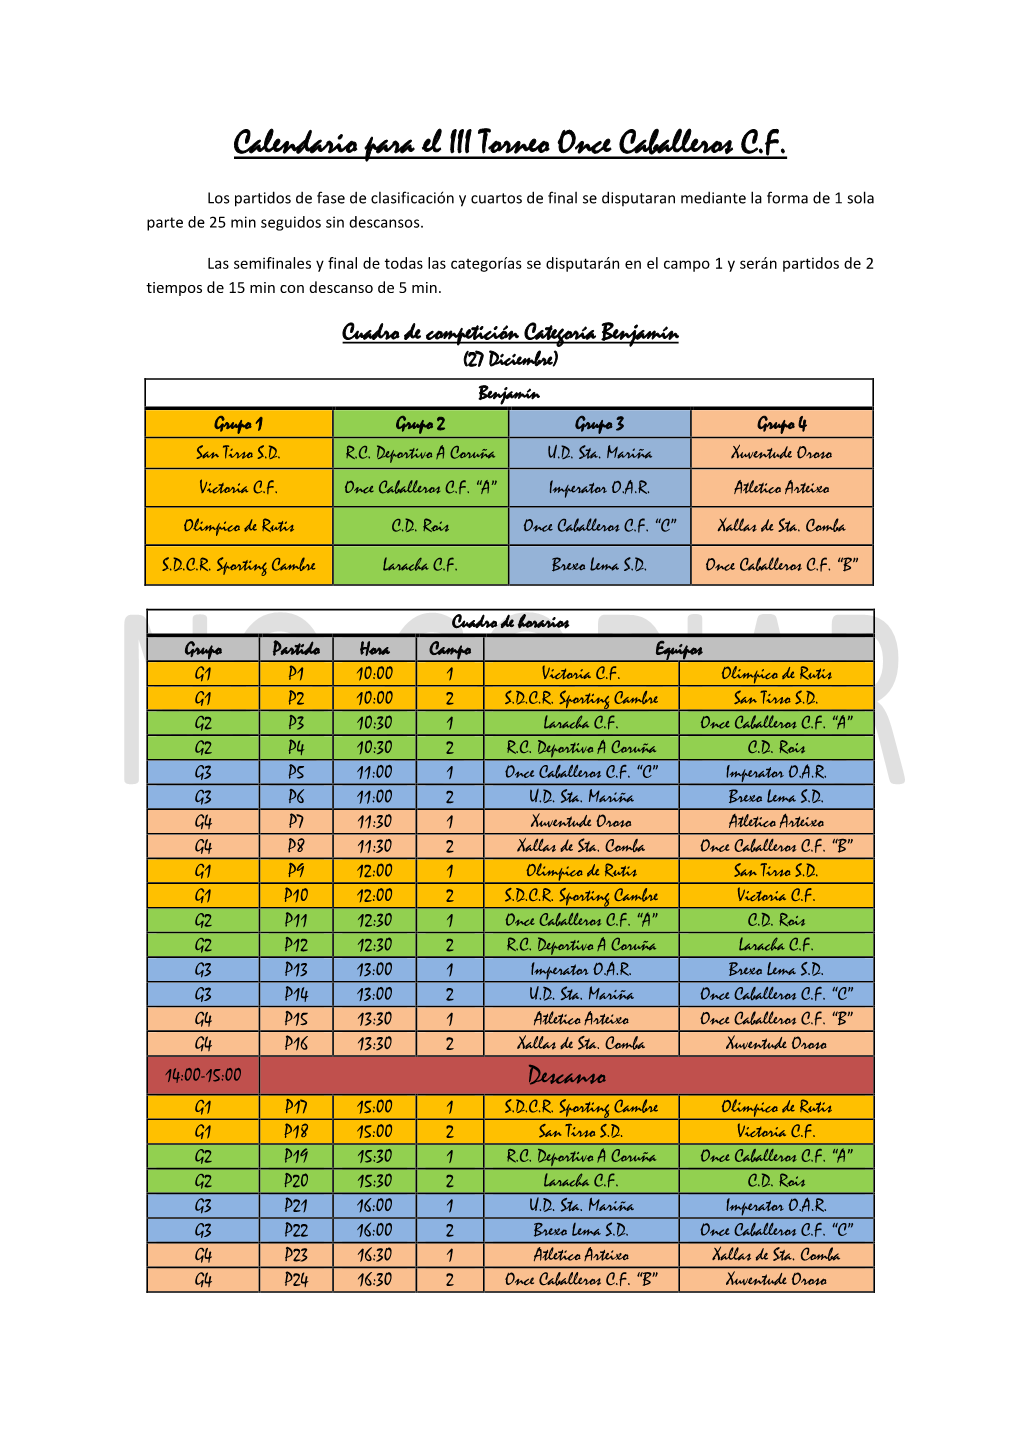 Calendario Para El III Torneo Once Caballeros C.F